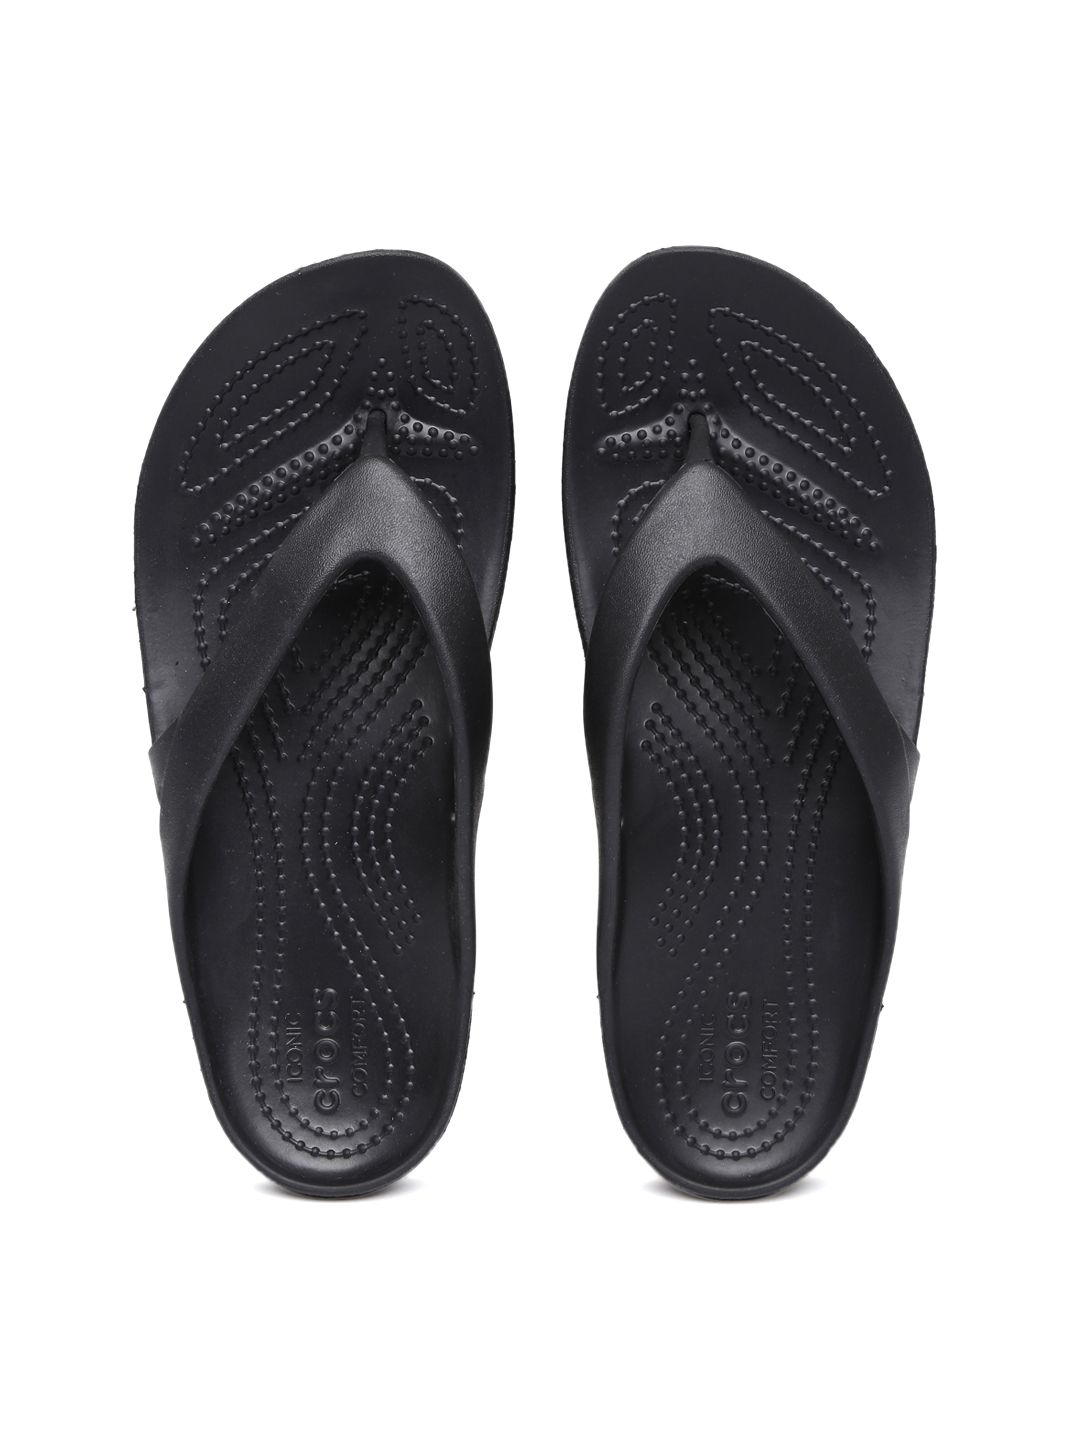 Crocs Women Black Flip-Flops Price in India